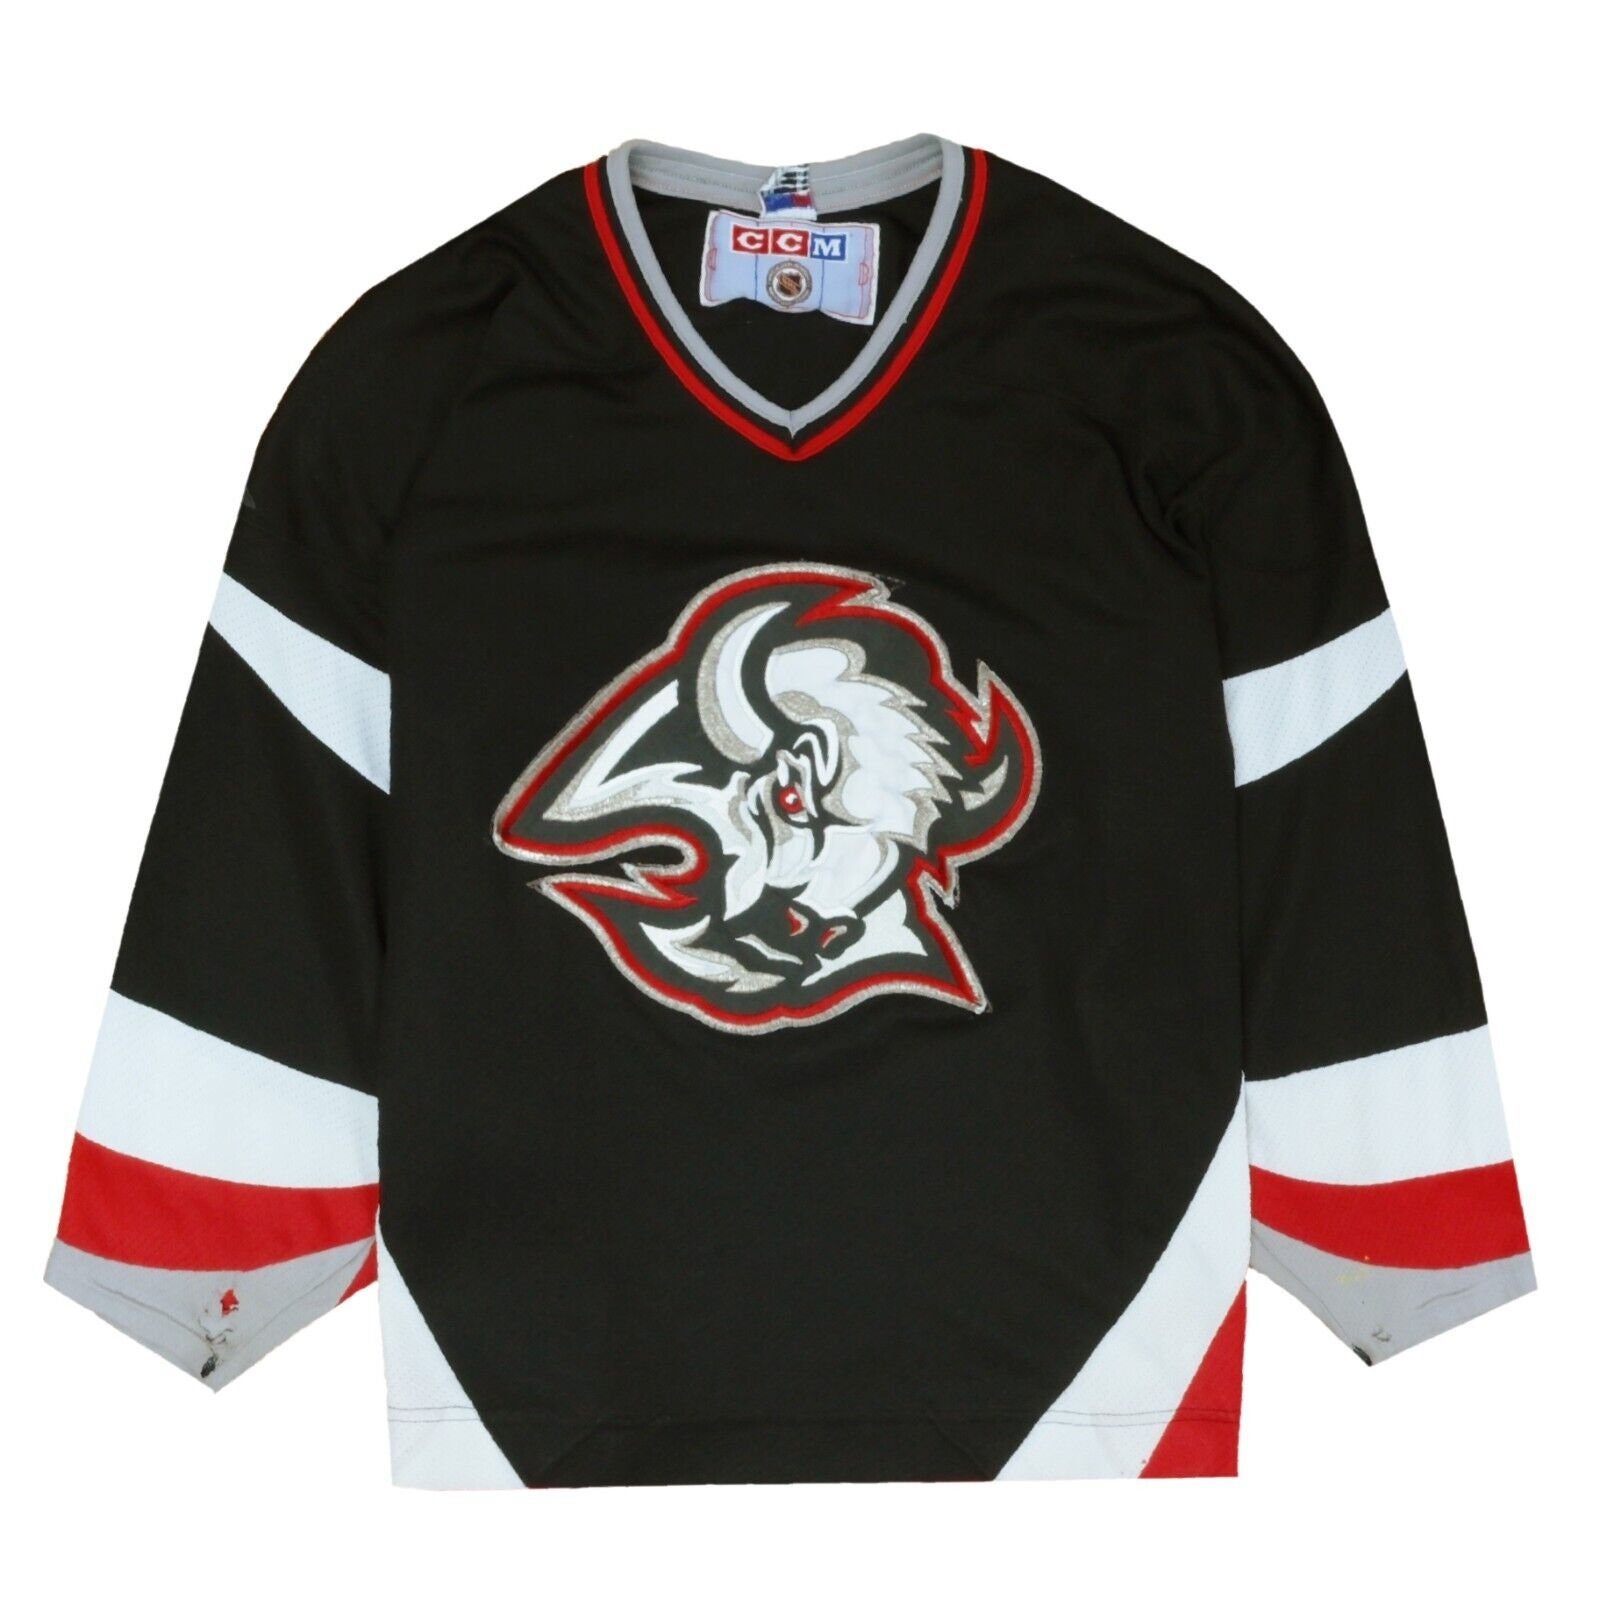 Vintage Buffalo Sabres Koho Goat Head Hockey Jersey, Size Large